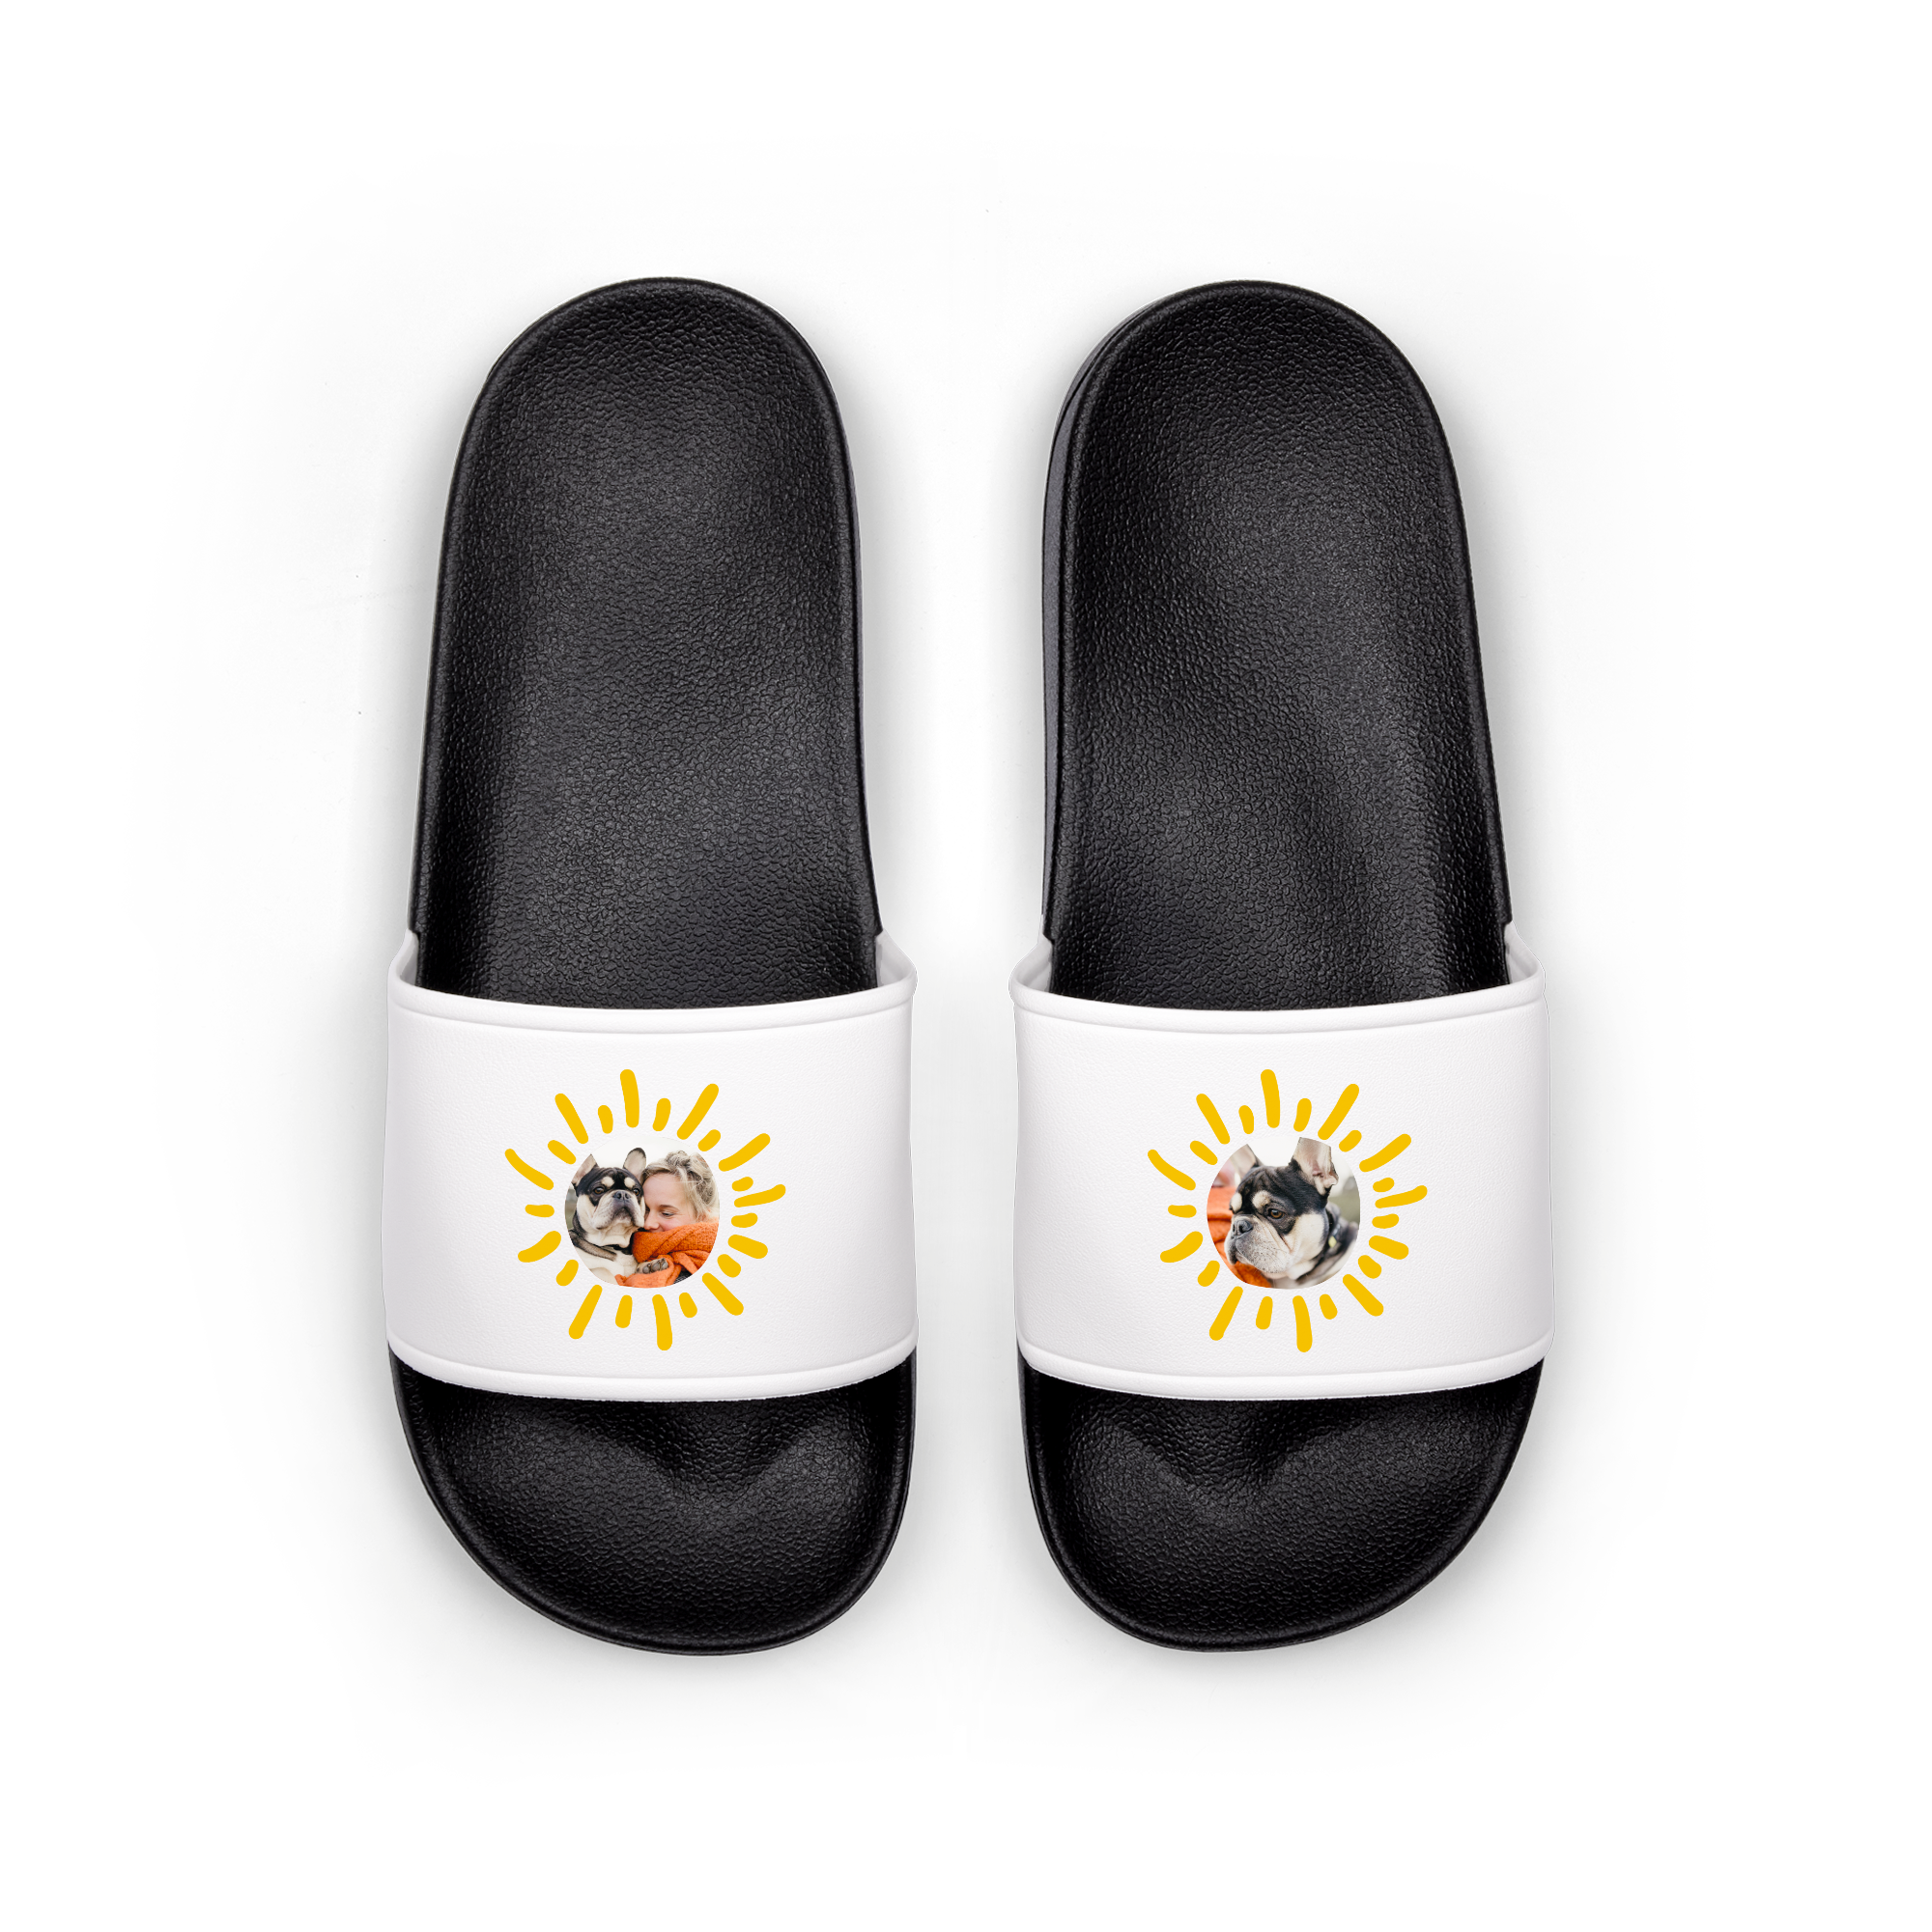 Personalised sliders flip-flops - Black - EU 38